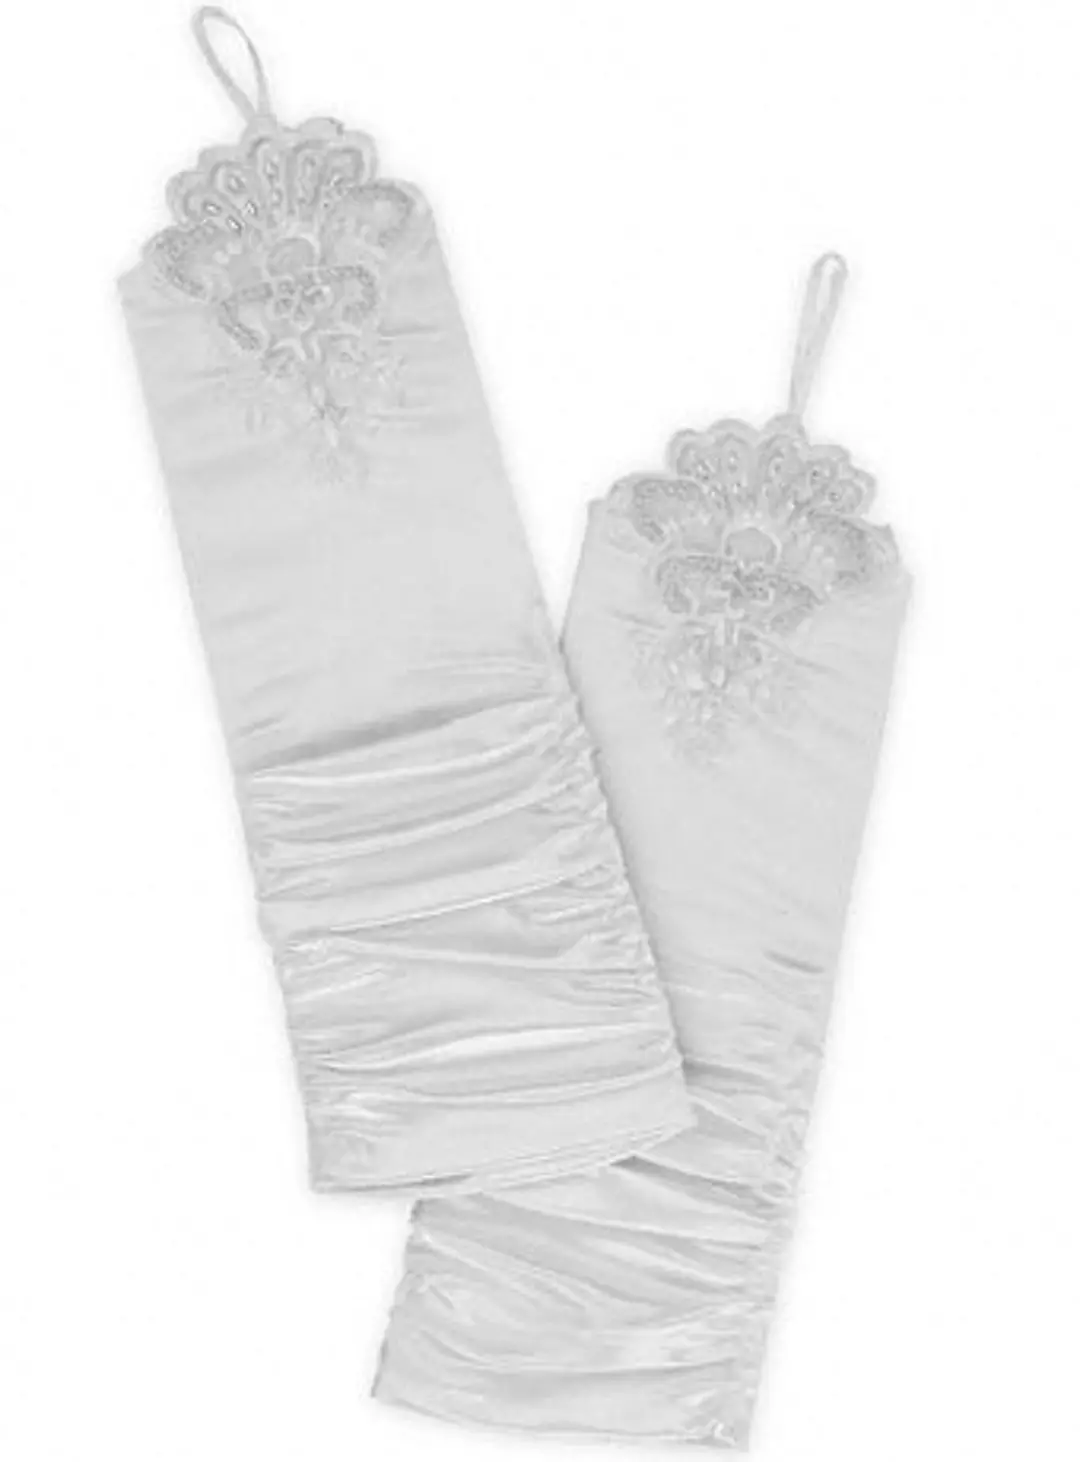 Ruched Lace Embellished Bridal Gauntlet Image